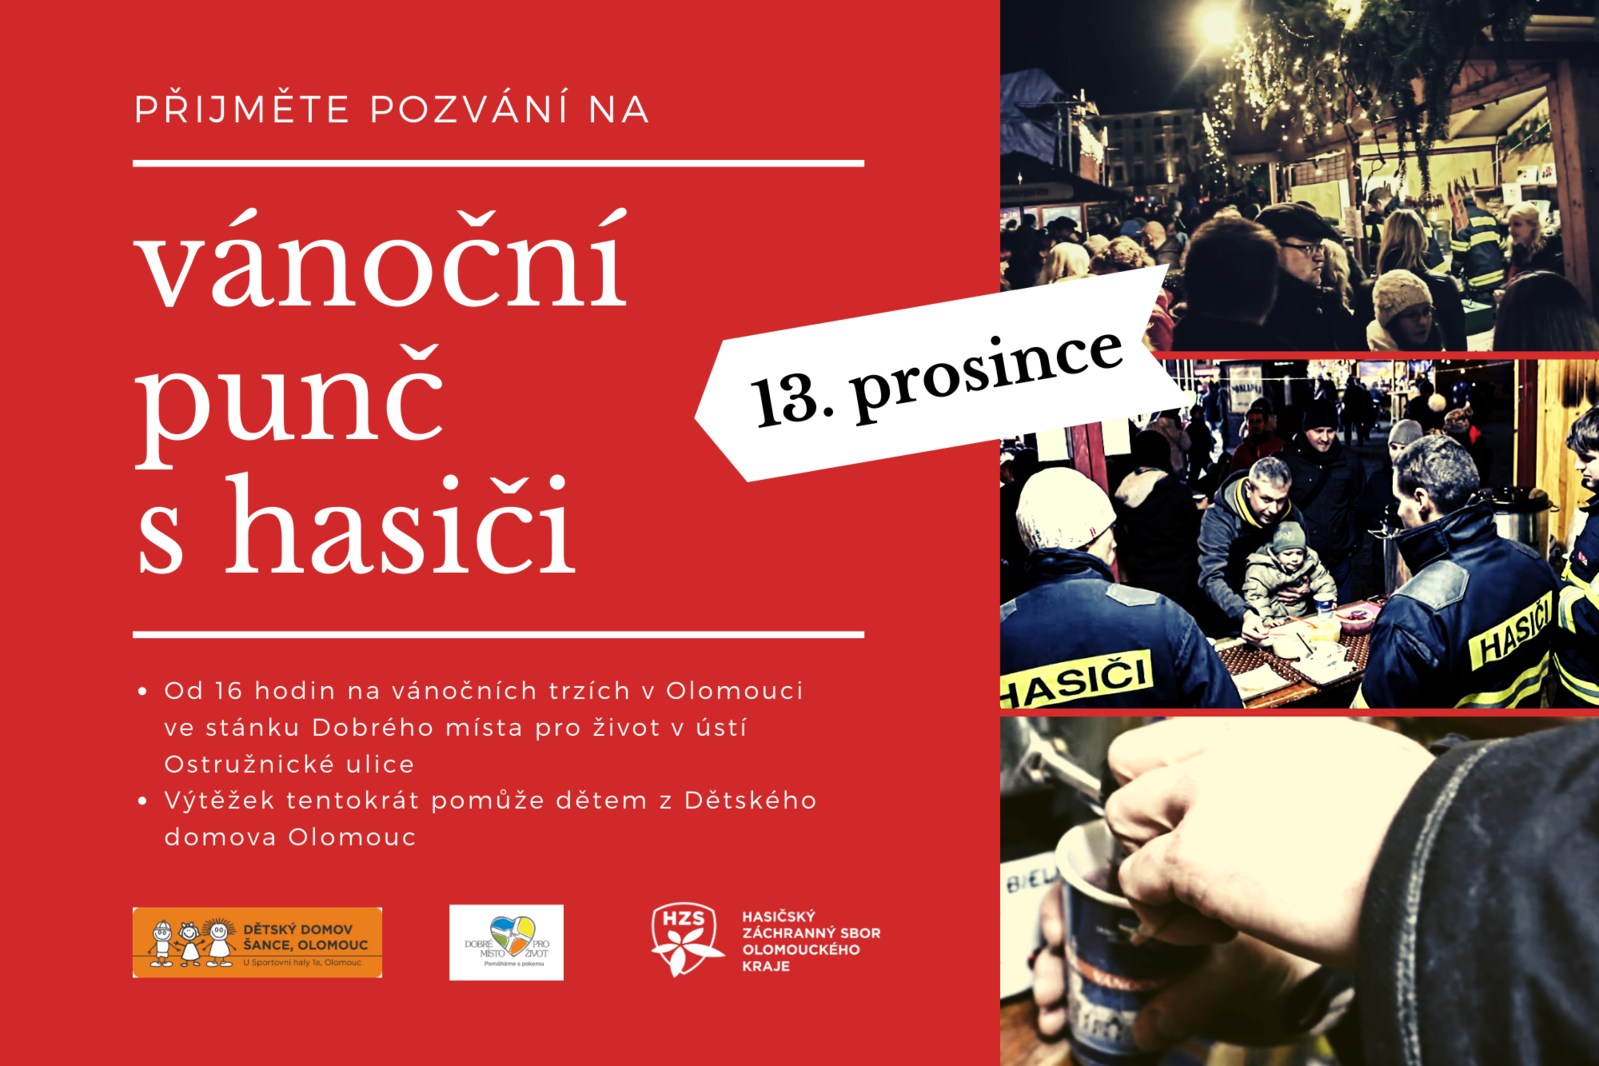 Pozvánka na vánoční punč s hasiči dne 13.12.2019 v Olomouci.png